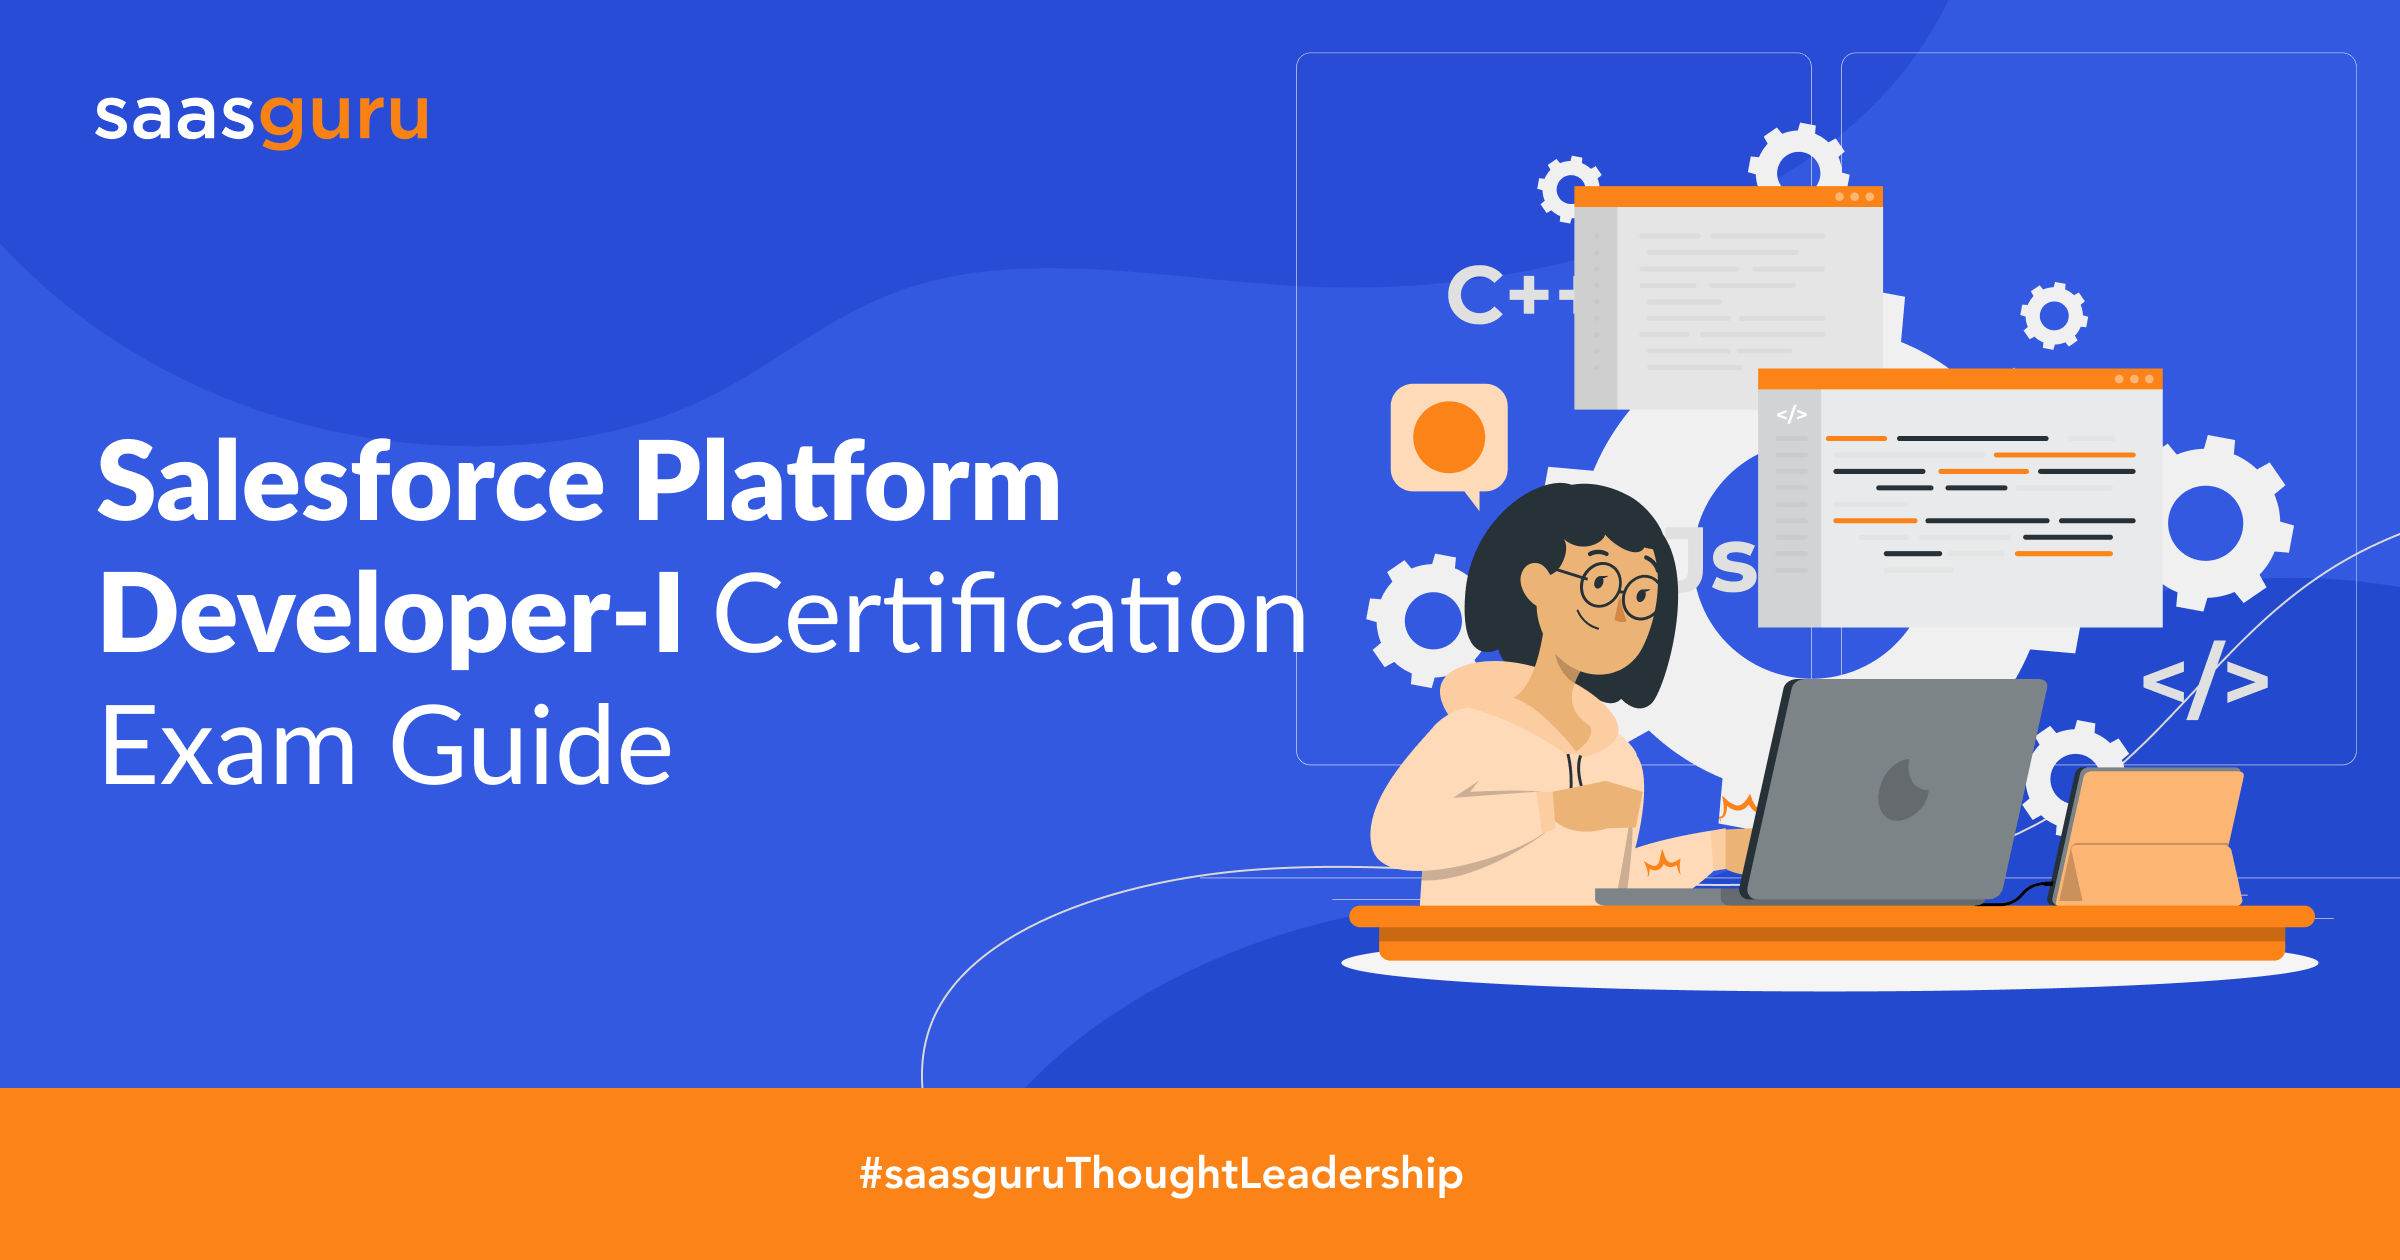 Salesforce Platform Developer-I Certification Exam Guide